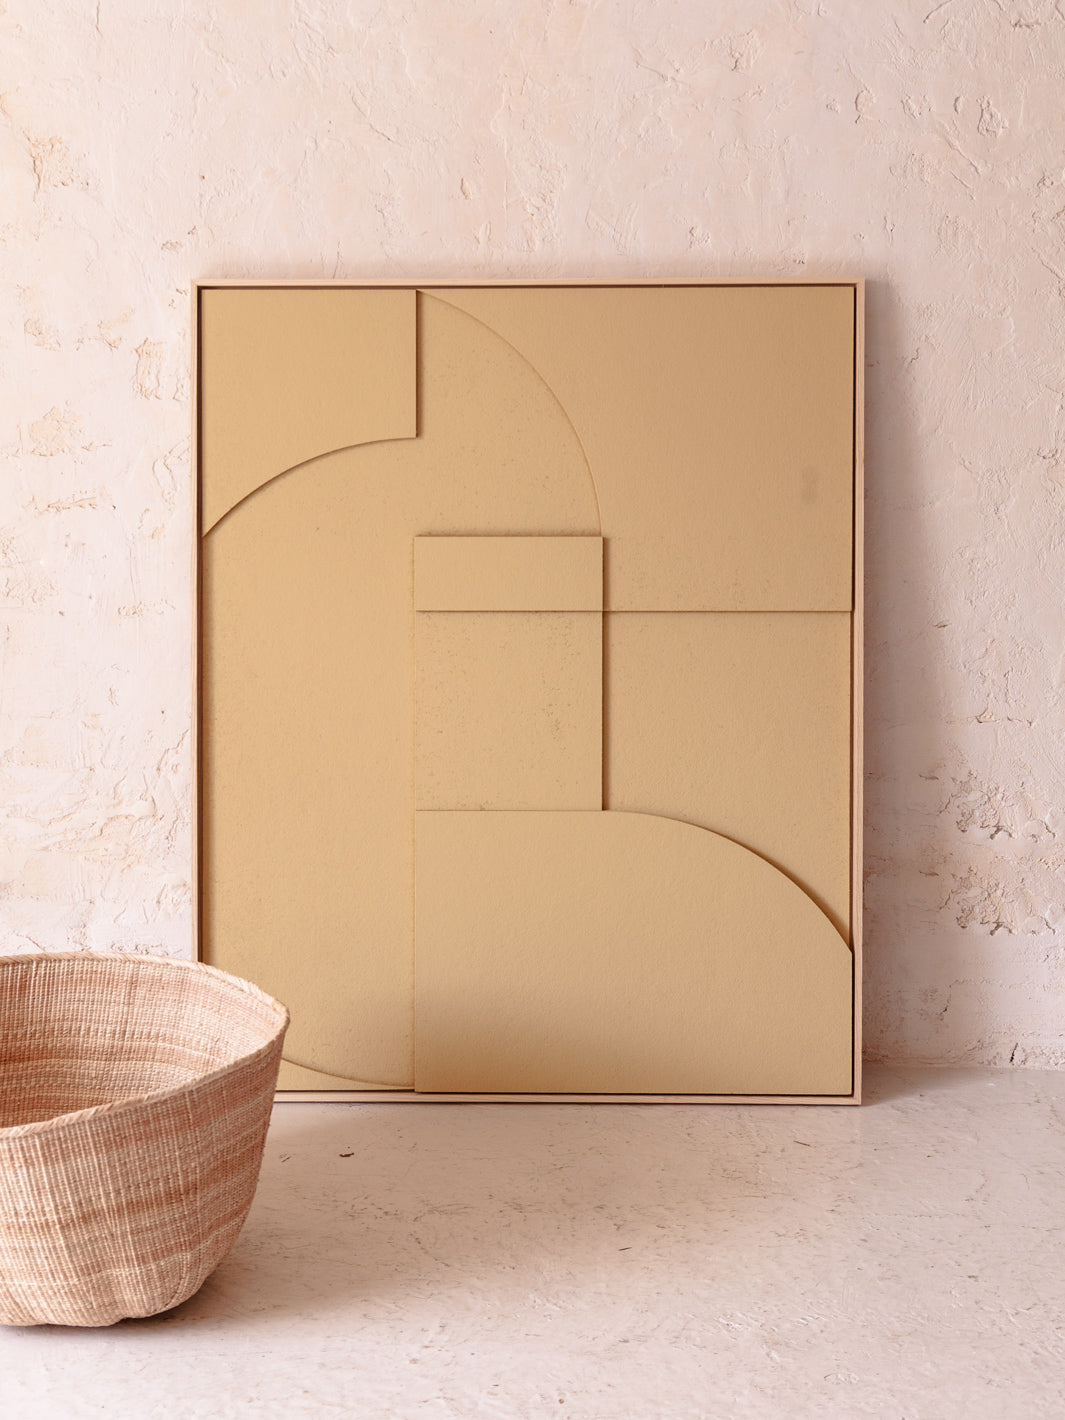 Tableau géométrique en relief géométrique sable "A" XL 100x123cm